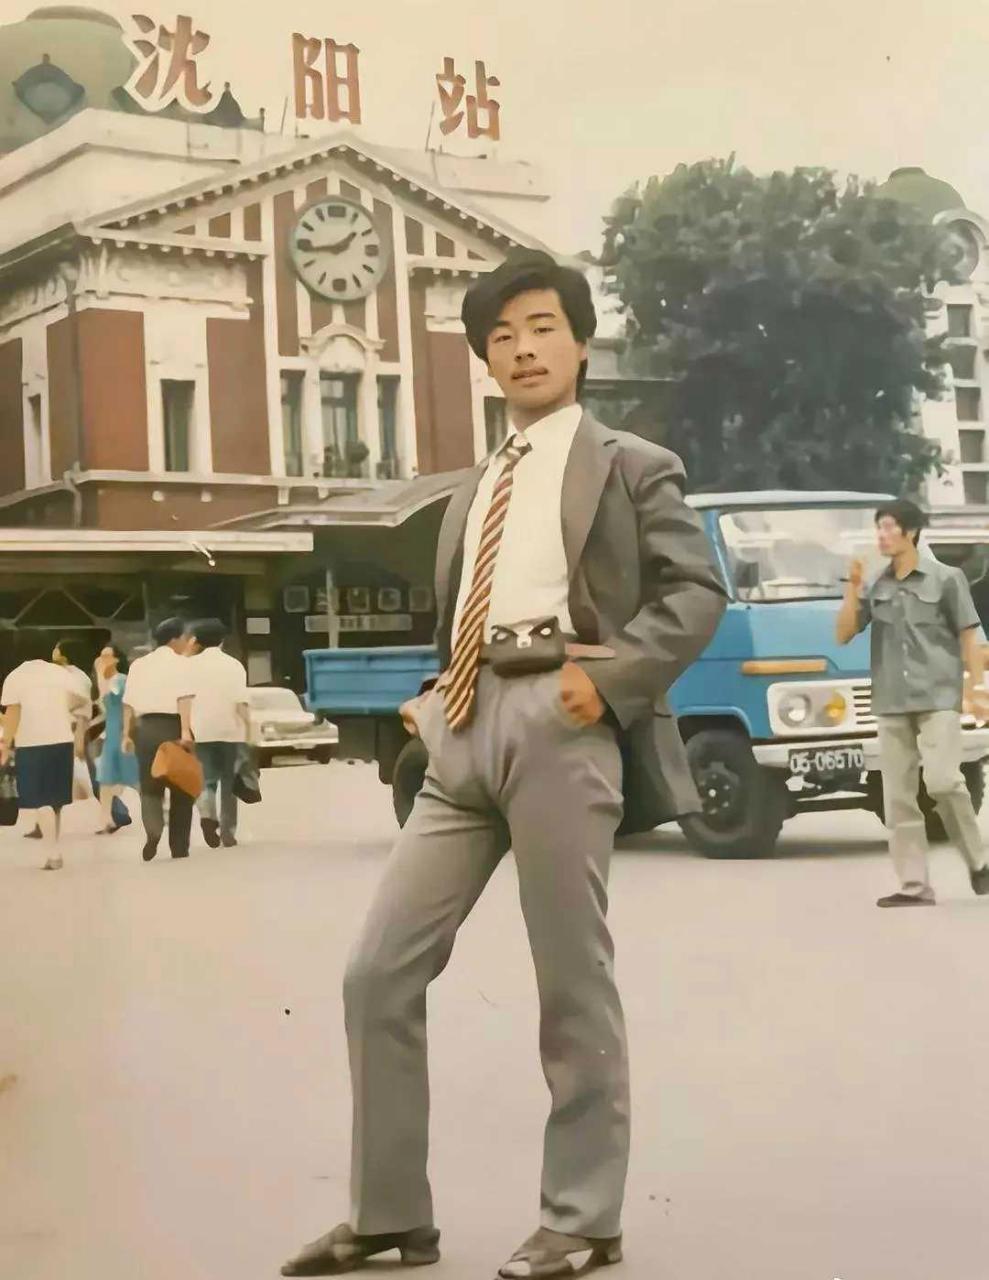 上世纪80年代,在沈阳站前拍照留念的帅气小伙